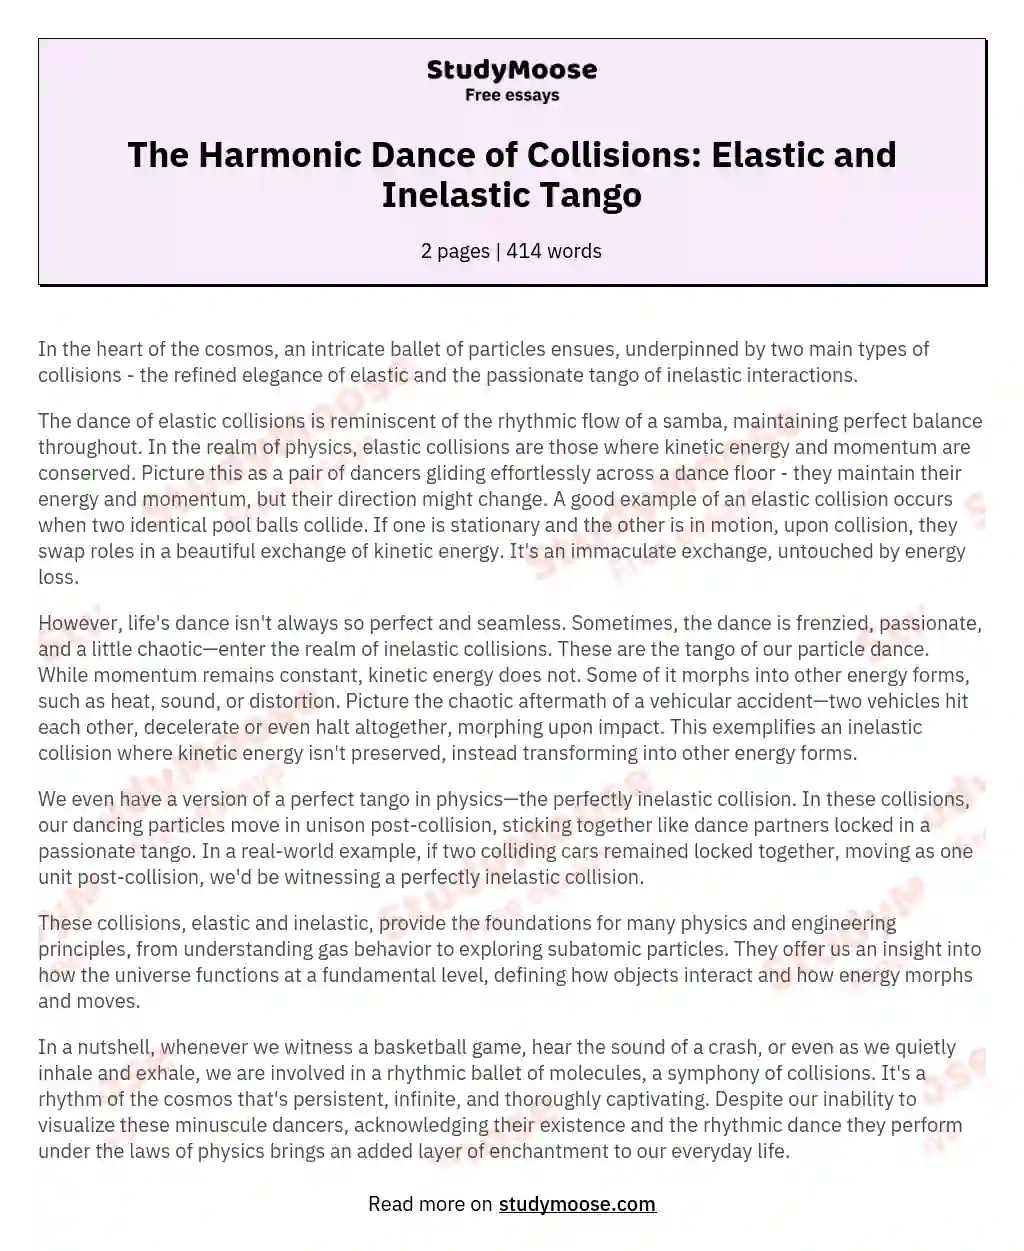 The Harmonic Dance of Collisions: Elastic and Inelastic Tango essay